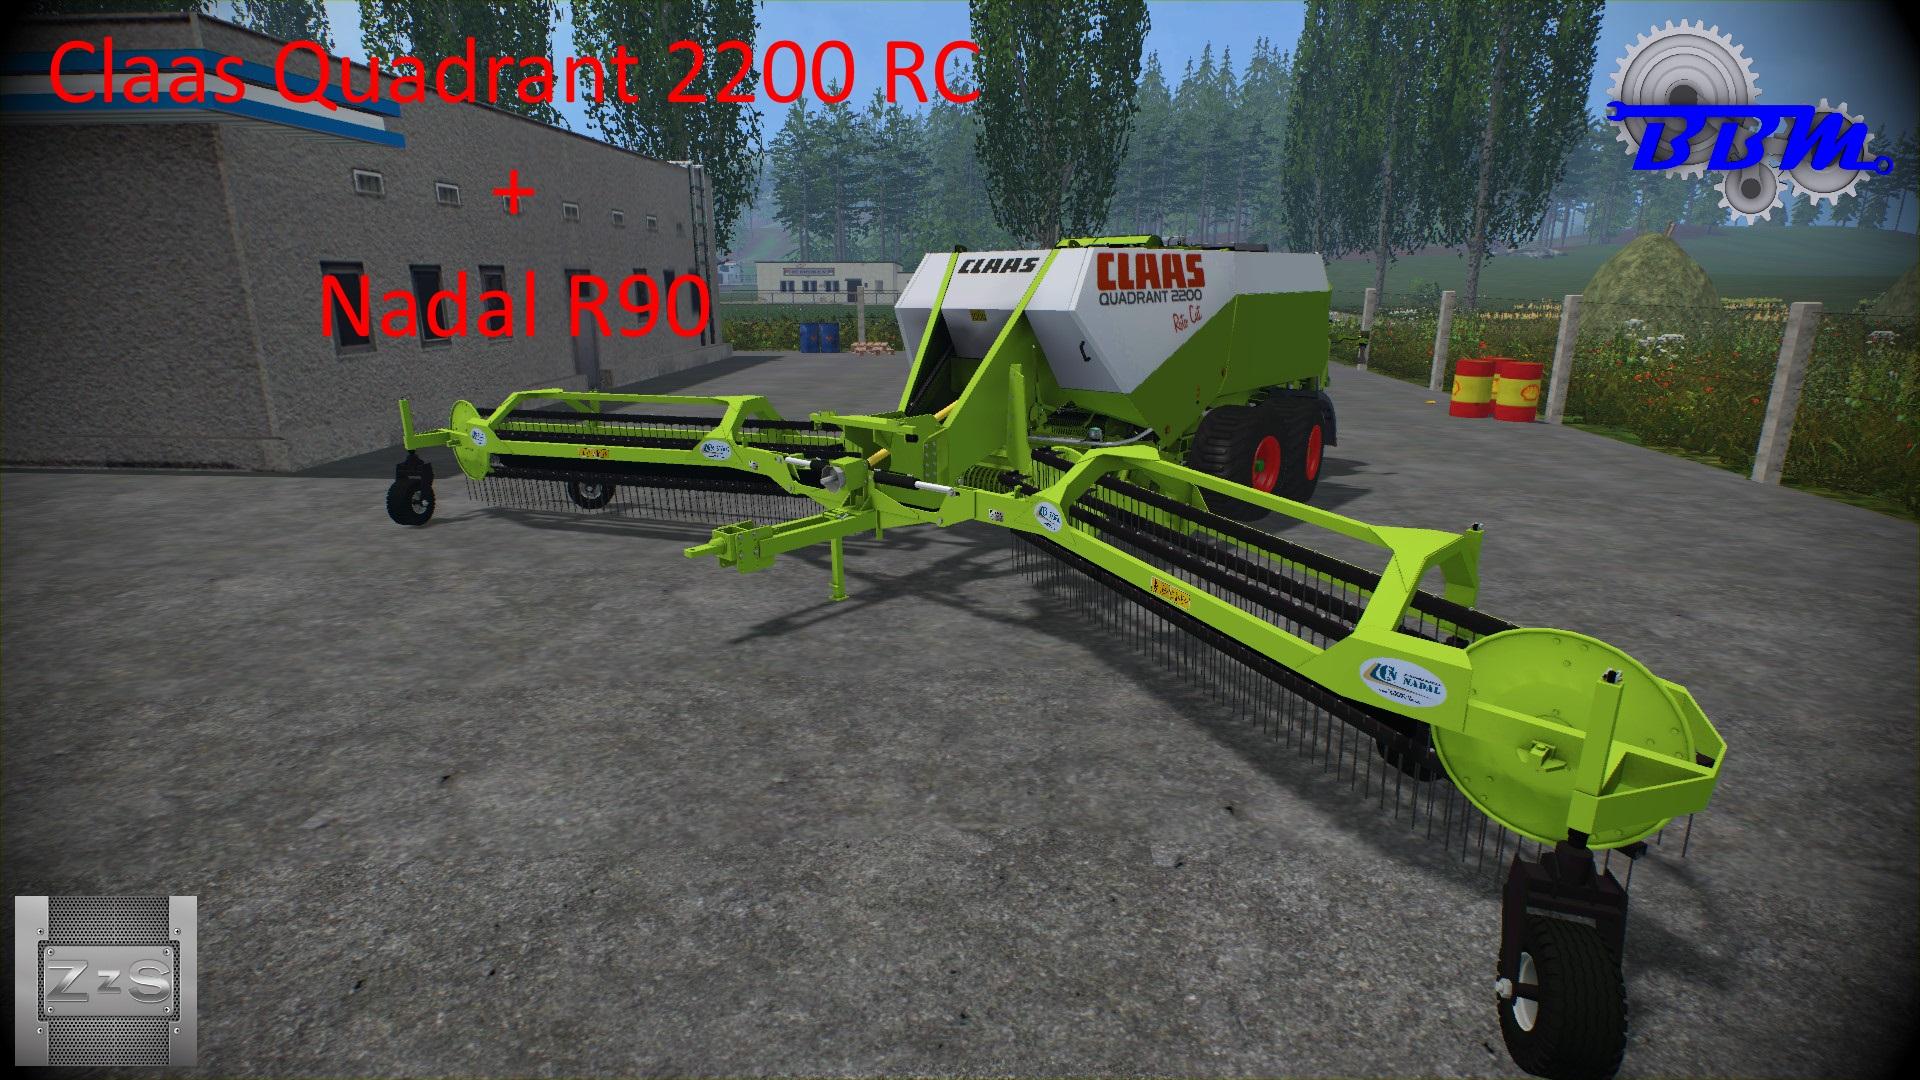 Claas Quadrant 2200 Rc Nadal R90 V10 • Farming Simulator 19 17 22 Mods Fs19 17 22 Mods 8977